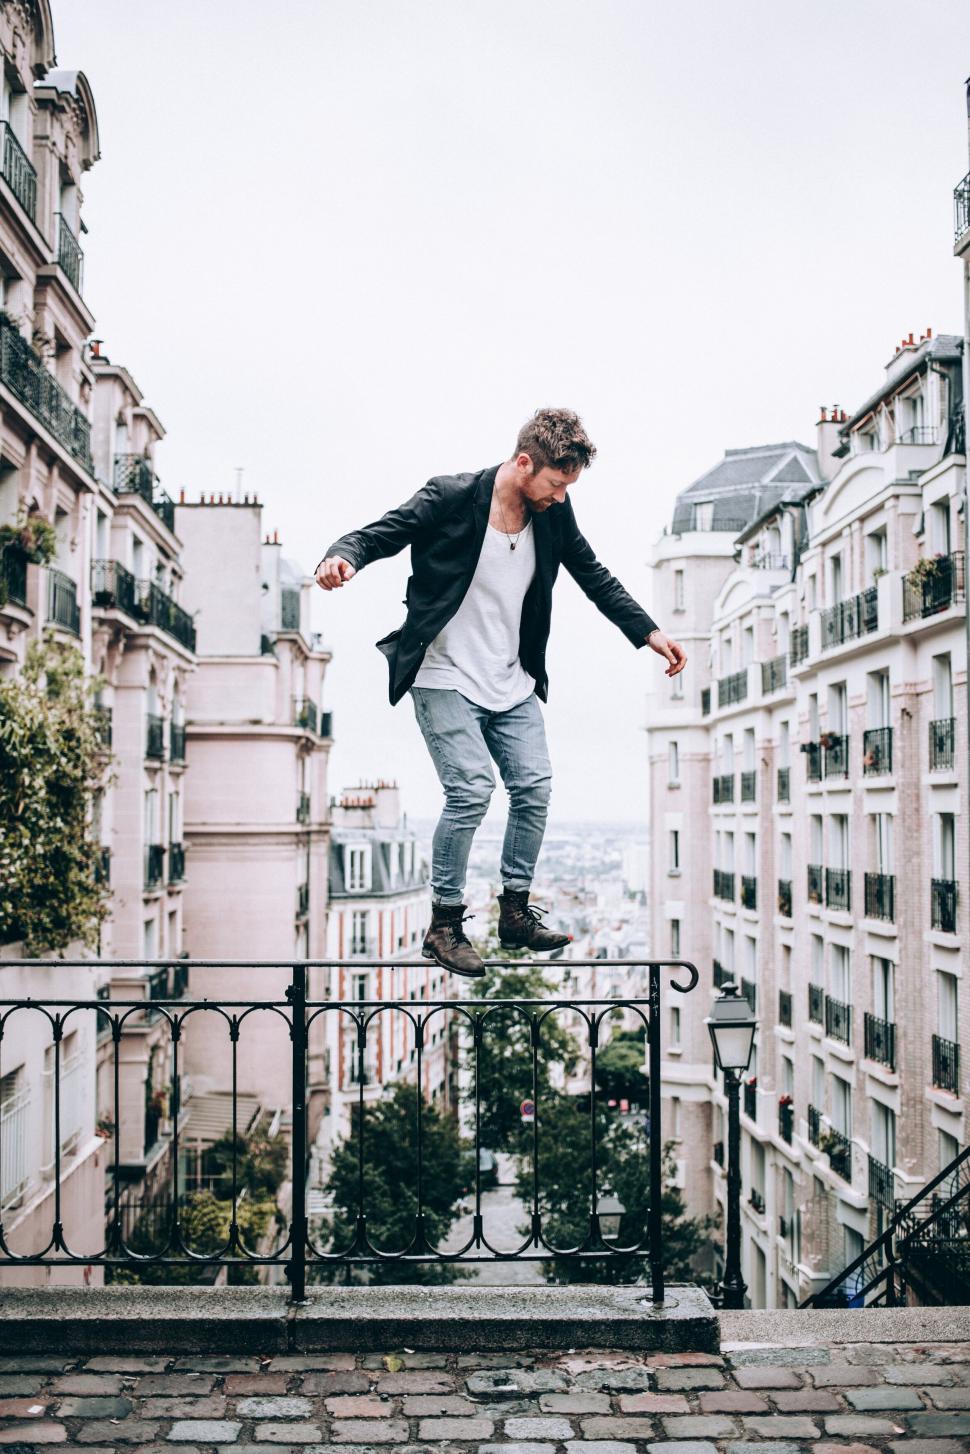 Free Image of Man balancing on railing in urban setting 